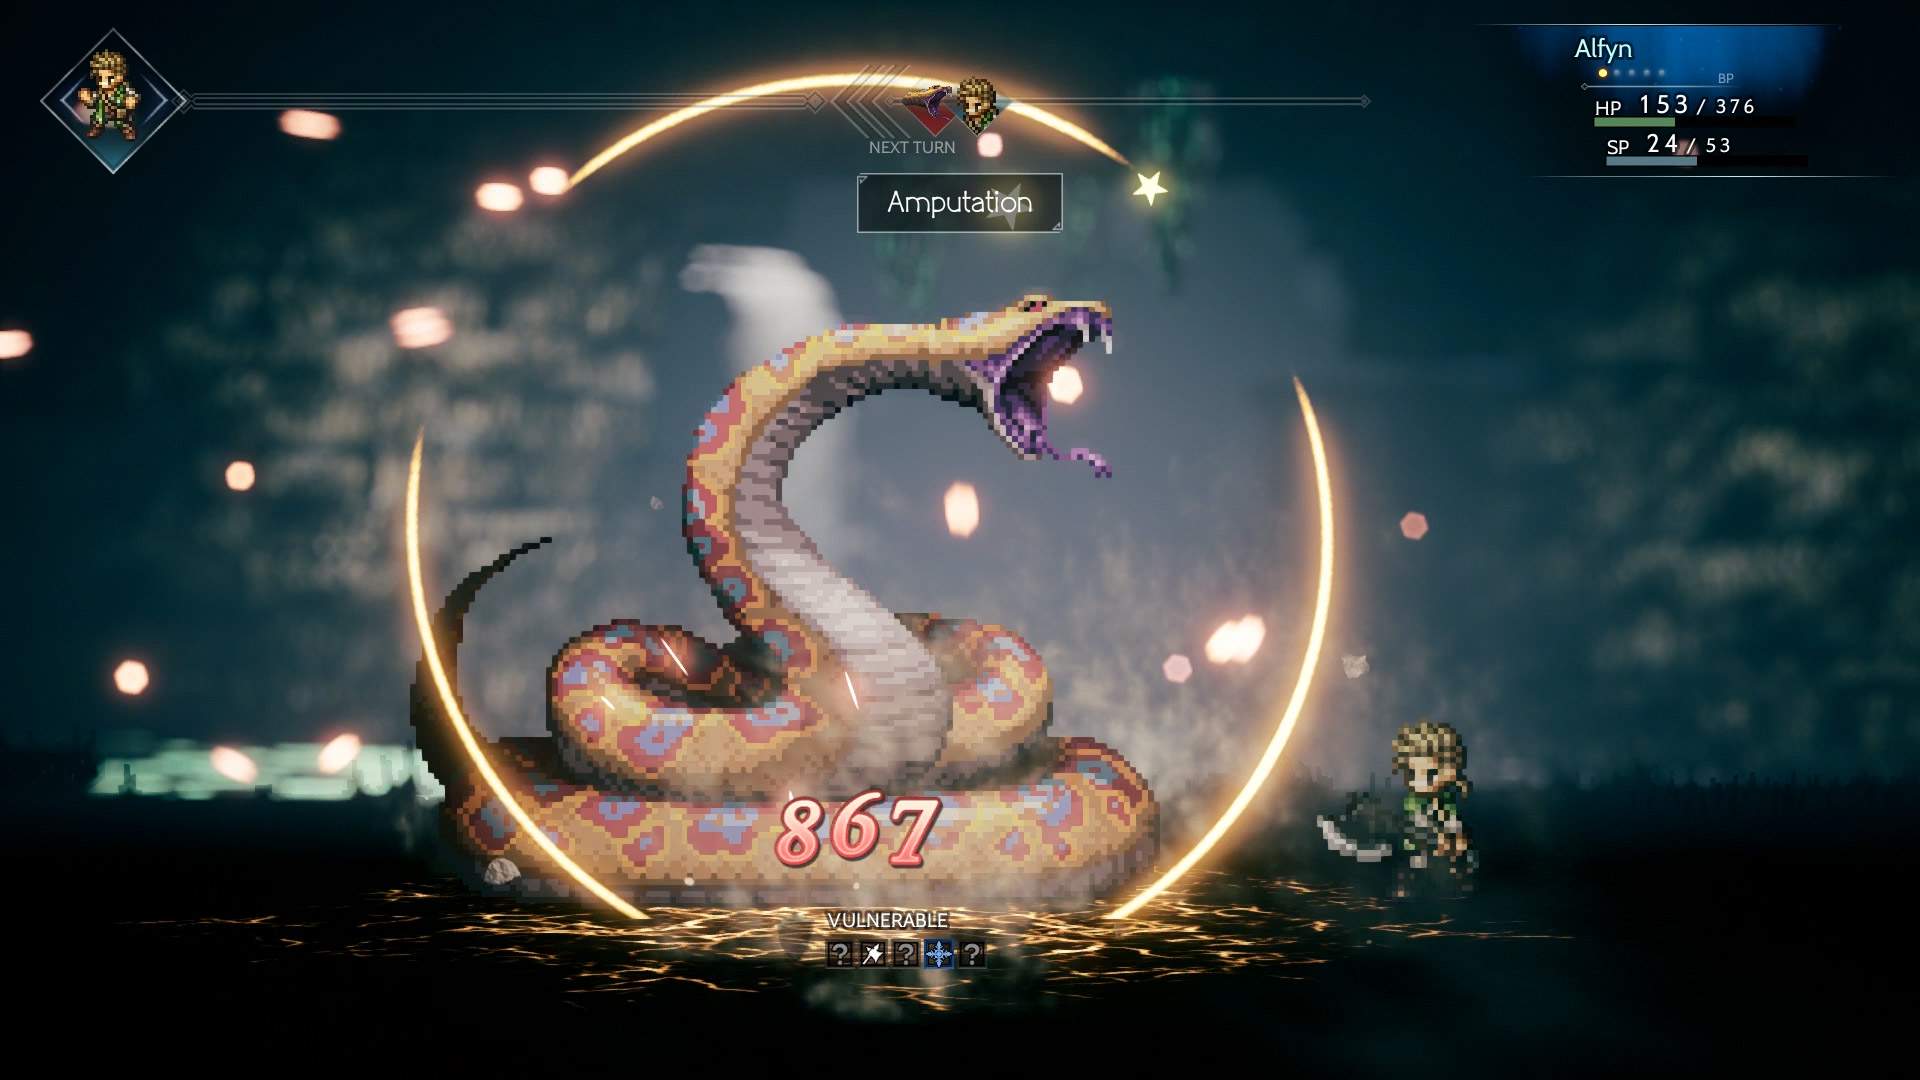 Captura de pantalla del juego que muestra a Alfyn usando un ataque contra un gran monstruo con forma de serpiente en una mazmorra.